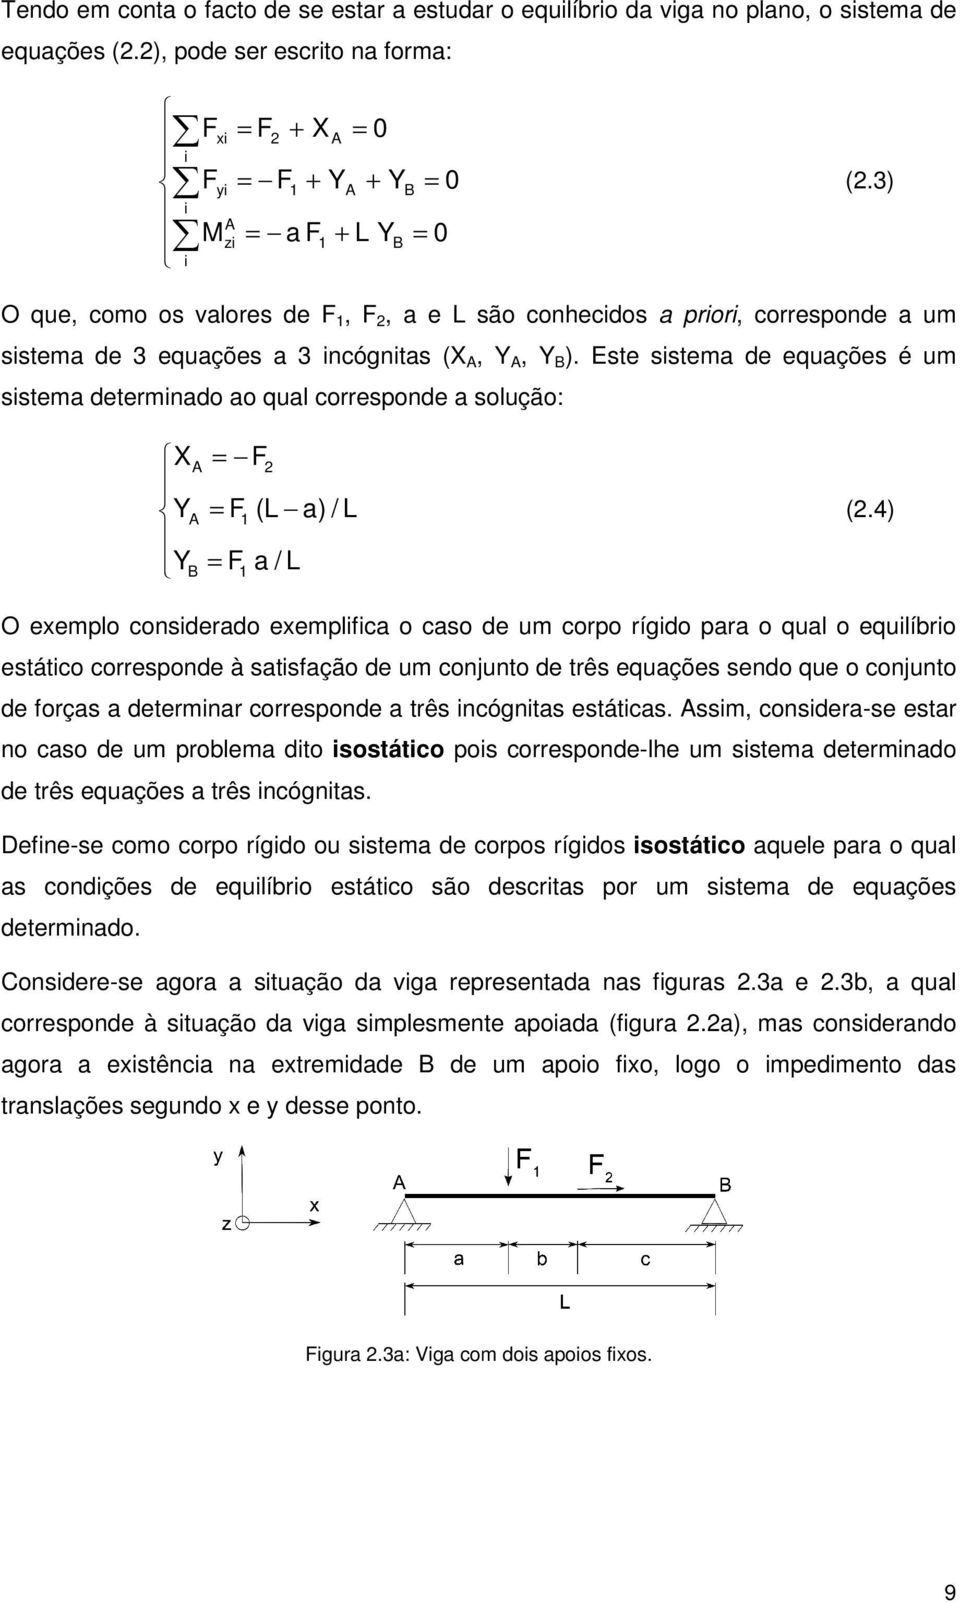 Este sstema de equações é um sstema determnado ao qual corresponde a solução: X = 2 Y = 1 (L a) / L Y = 1 a / L (2.